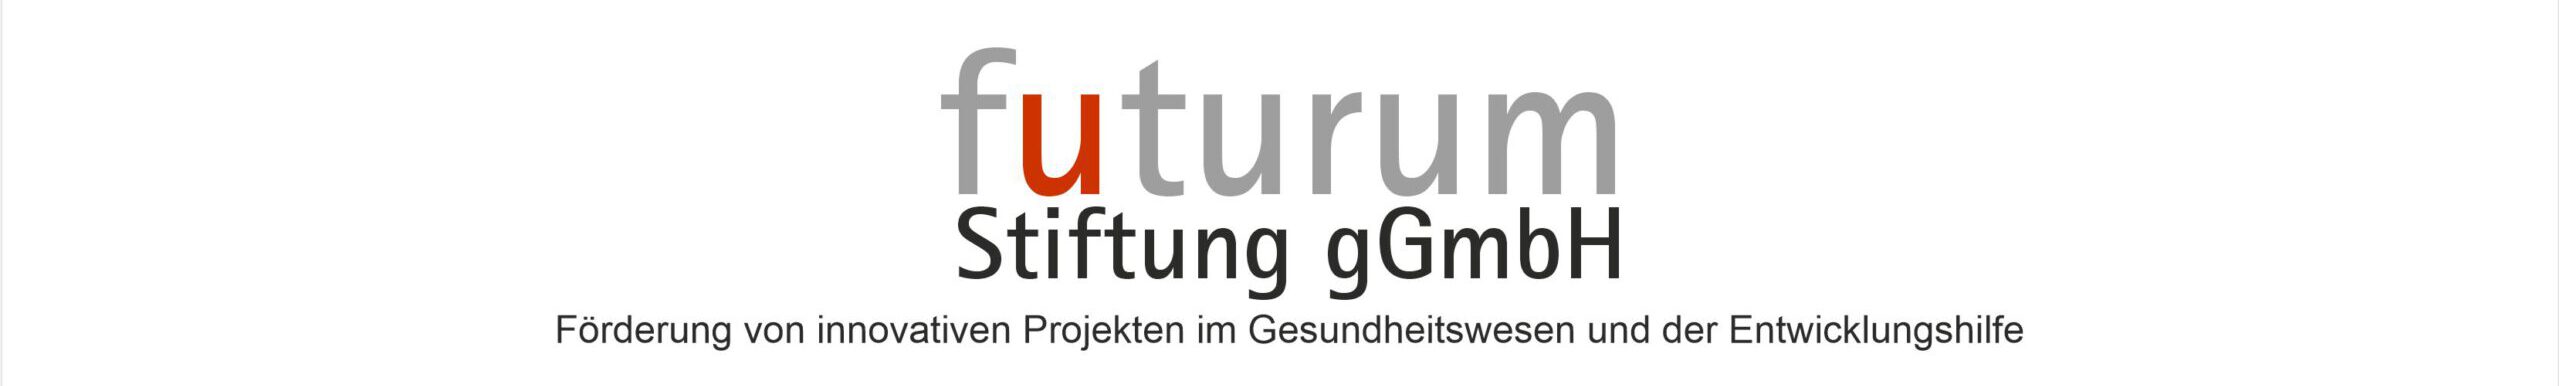 futurum – Stiftung